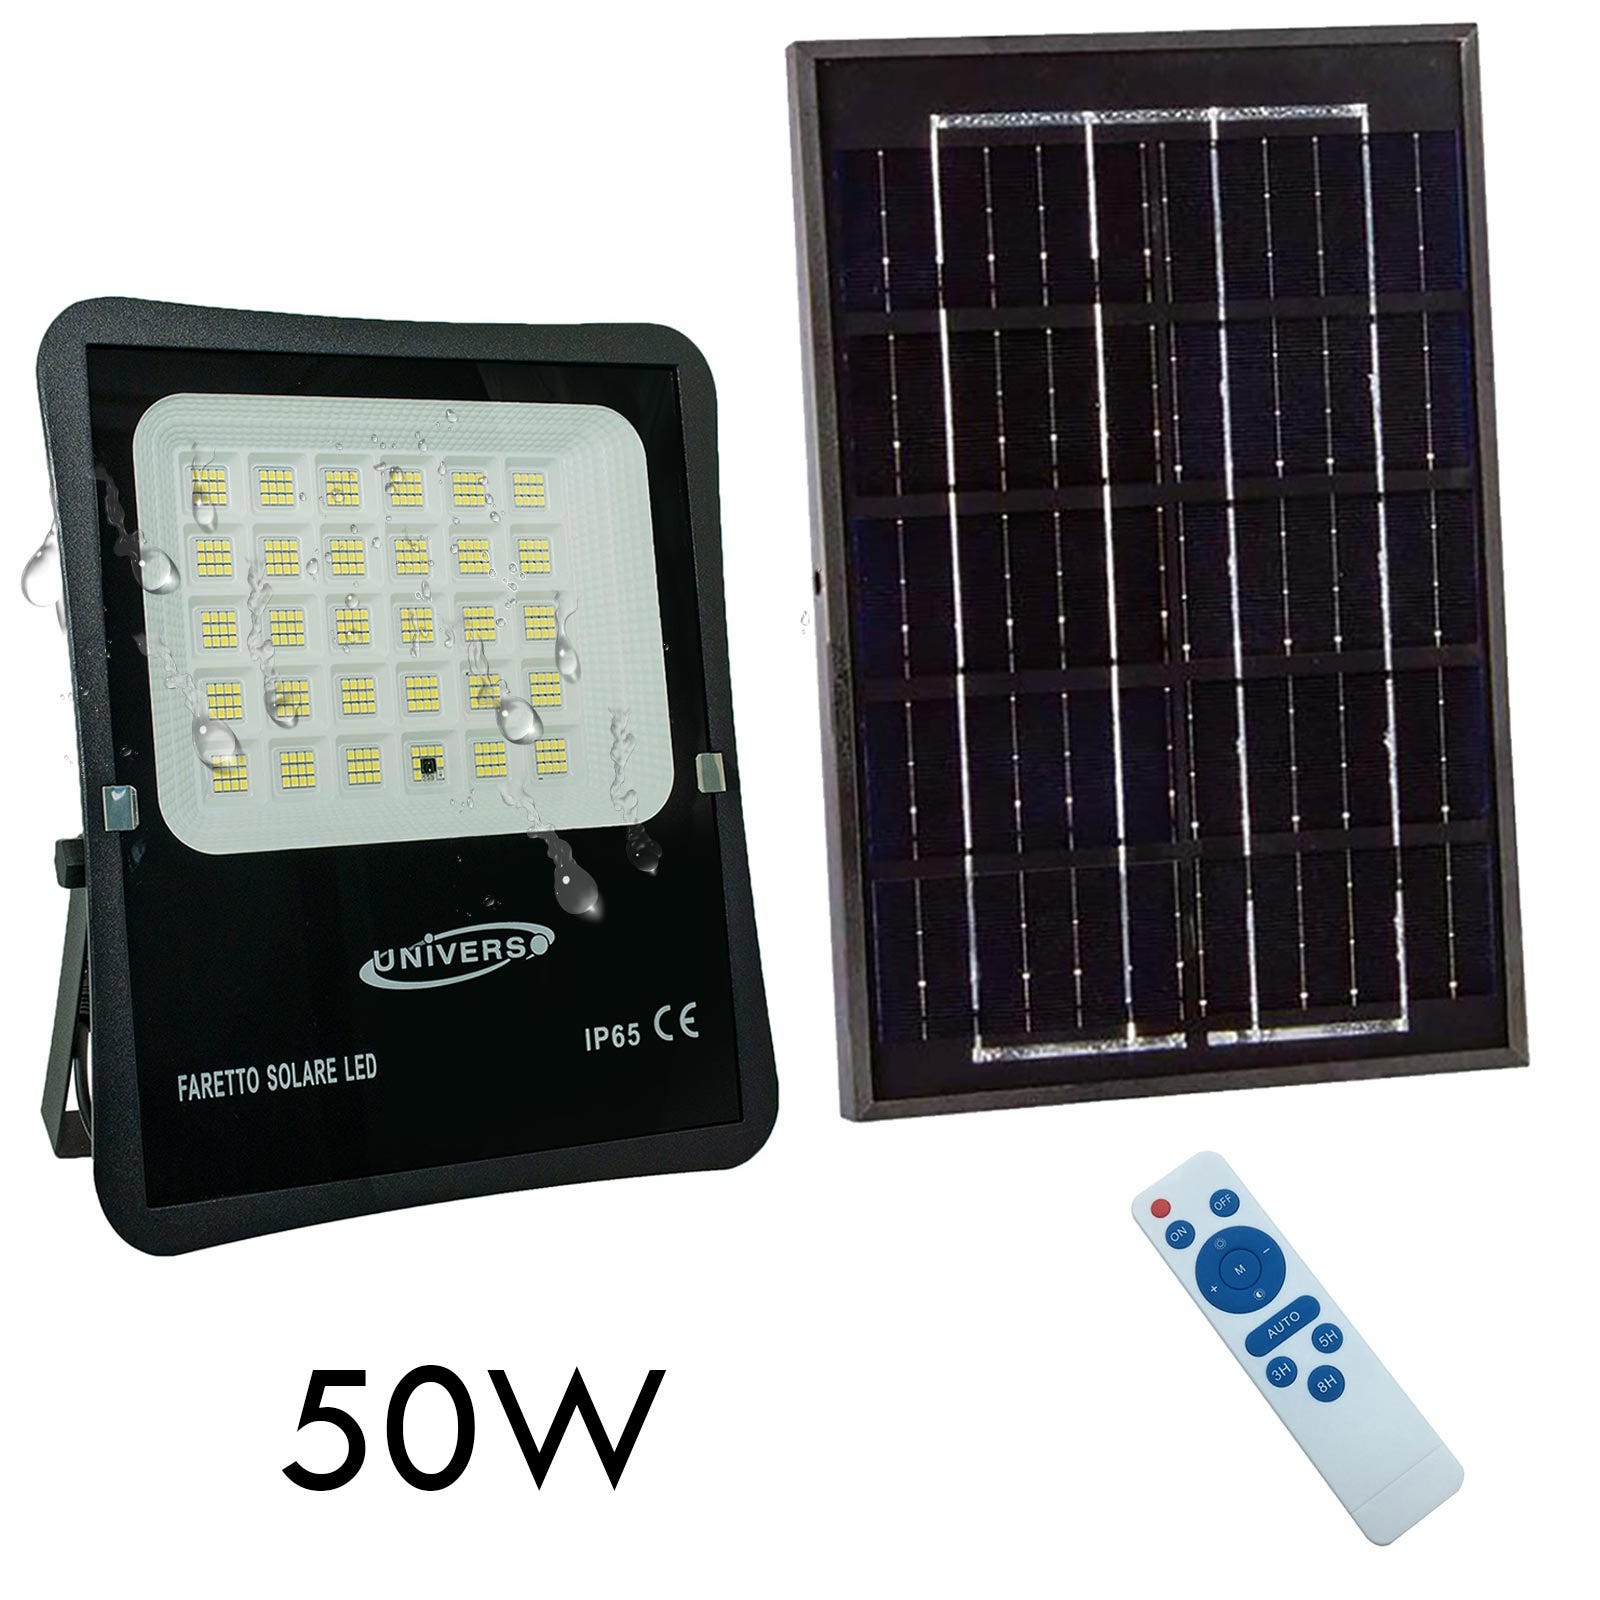 Artículos nuevos y usados en venta en Paneles solares, Facebook  Marketplace